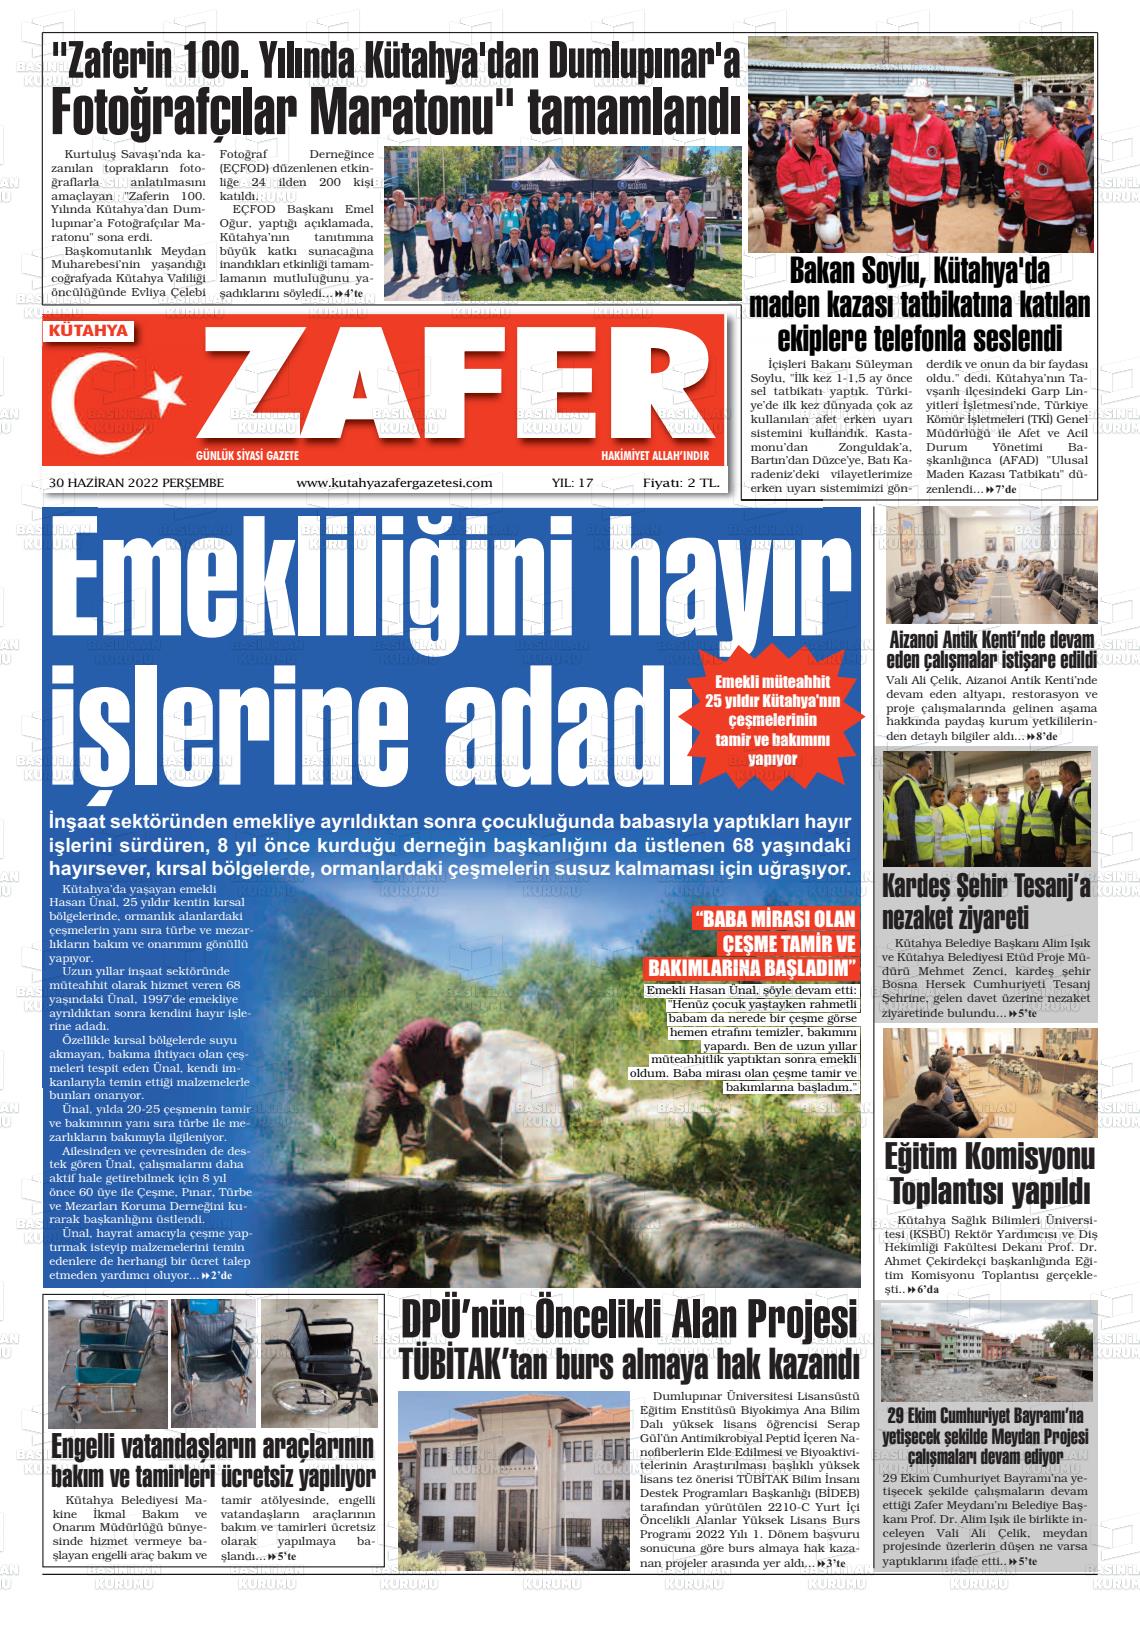 30 Haziran 2022 Kütahya Zafer Gazete Manşeti